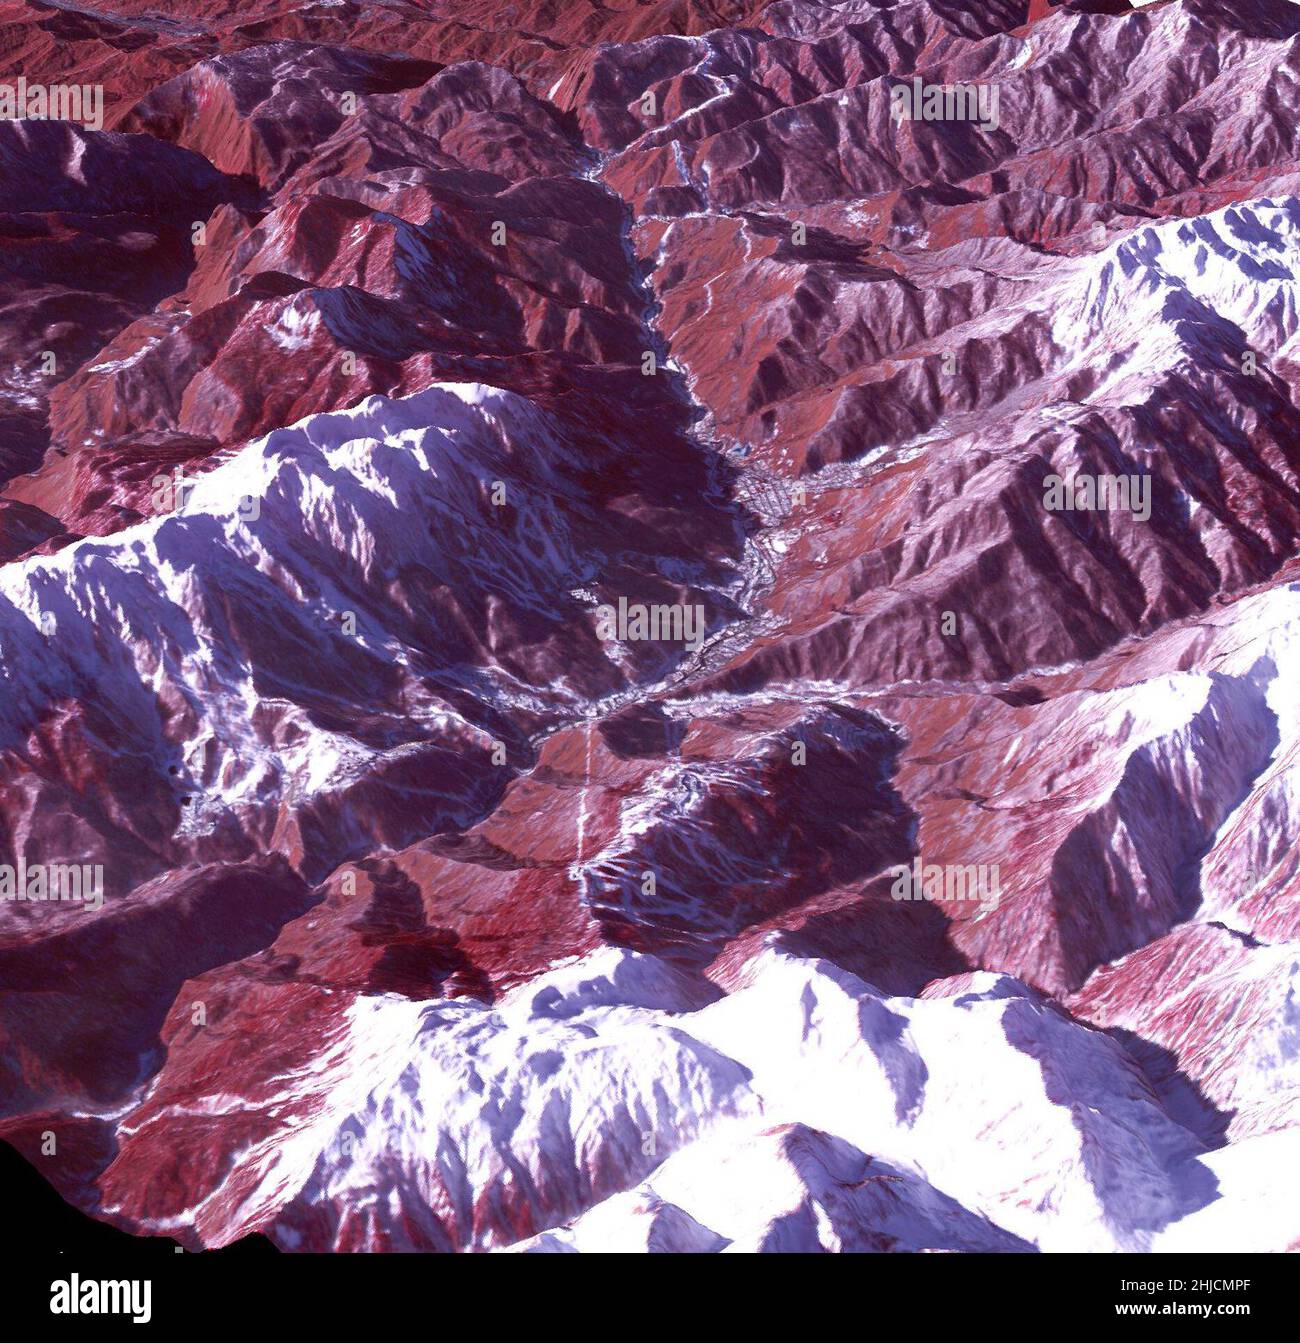 Falschfarbe Bild der Ski- und Snowboardplätze für die Olympischen Winterspiele 2014 in Sotschi, Russland, aufgenommen am 4. Januar 2014 vom Advanced Spaceborne Thermal Emission and Reflection Radiometer (ASTER) Instrument auf der NASA-Raumsonde Terra. Das Skigebiet Rosa Khutar in der Nähe von Sotschi, Russland, befindet sich im Zentrum des Tales, und die Pisten sind auf den schattigen Hängen auf der linken Talseite sichtbar. Die Höhe wurde 1,5 Mal übertrieben, um topografische Details zu erhalten. In diesem südwestlich anmutenden Bild zeigt Rot Vegetation an, Weiß ist Schnee und das Resort erscheint grau. Stockfoto